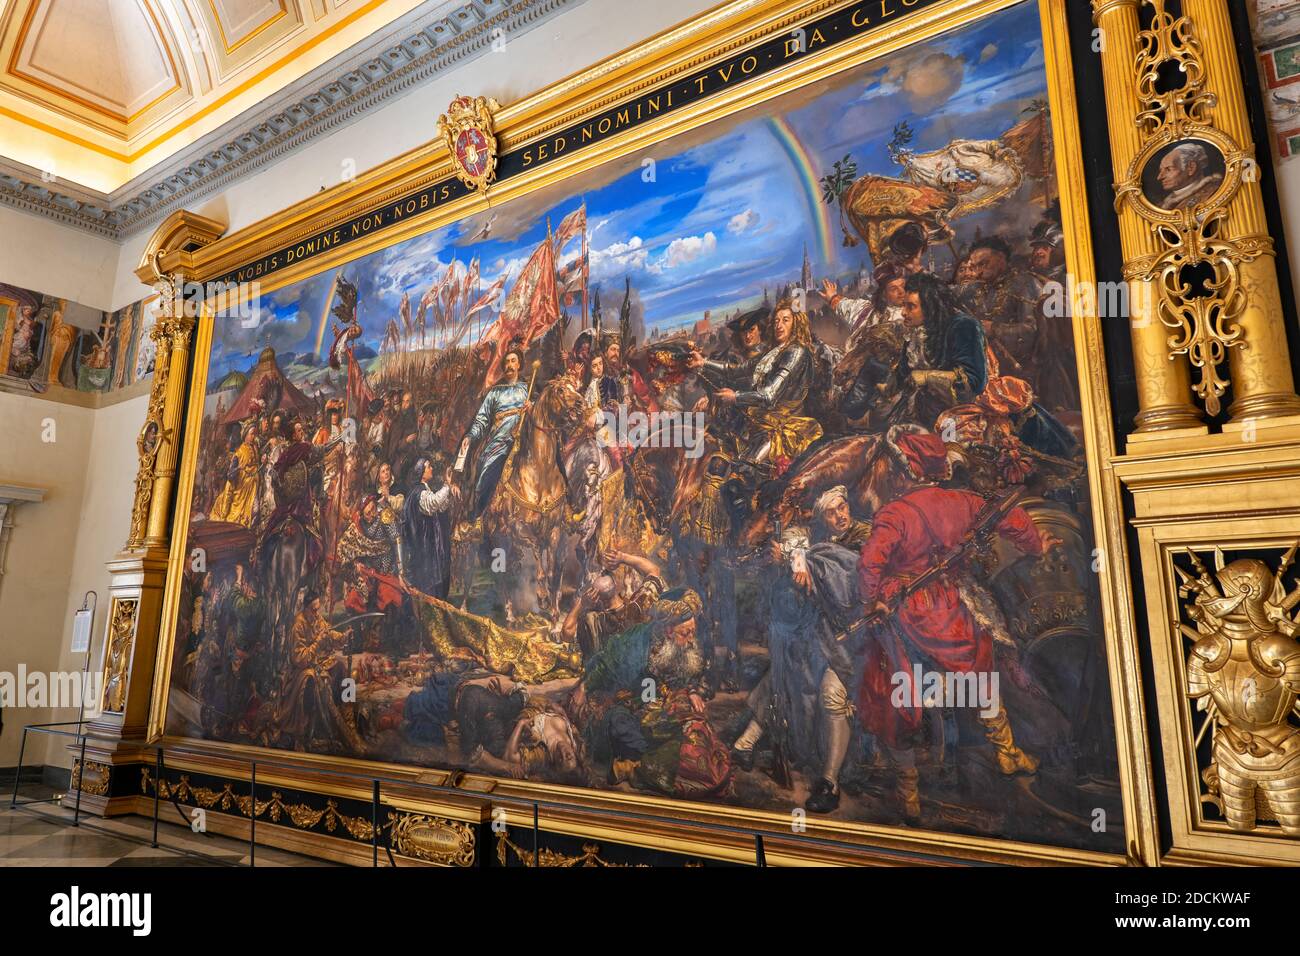 Dipinto di Giovanni III Sobieski Re di Polonia vittoria sui Turchi Ottomani nella Battaglia di Vienna (1683), tela a olio di Jan Matejko, Sobieski Room, Vati Foto Stock